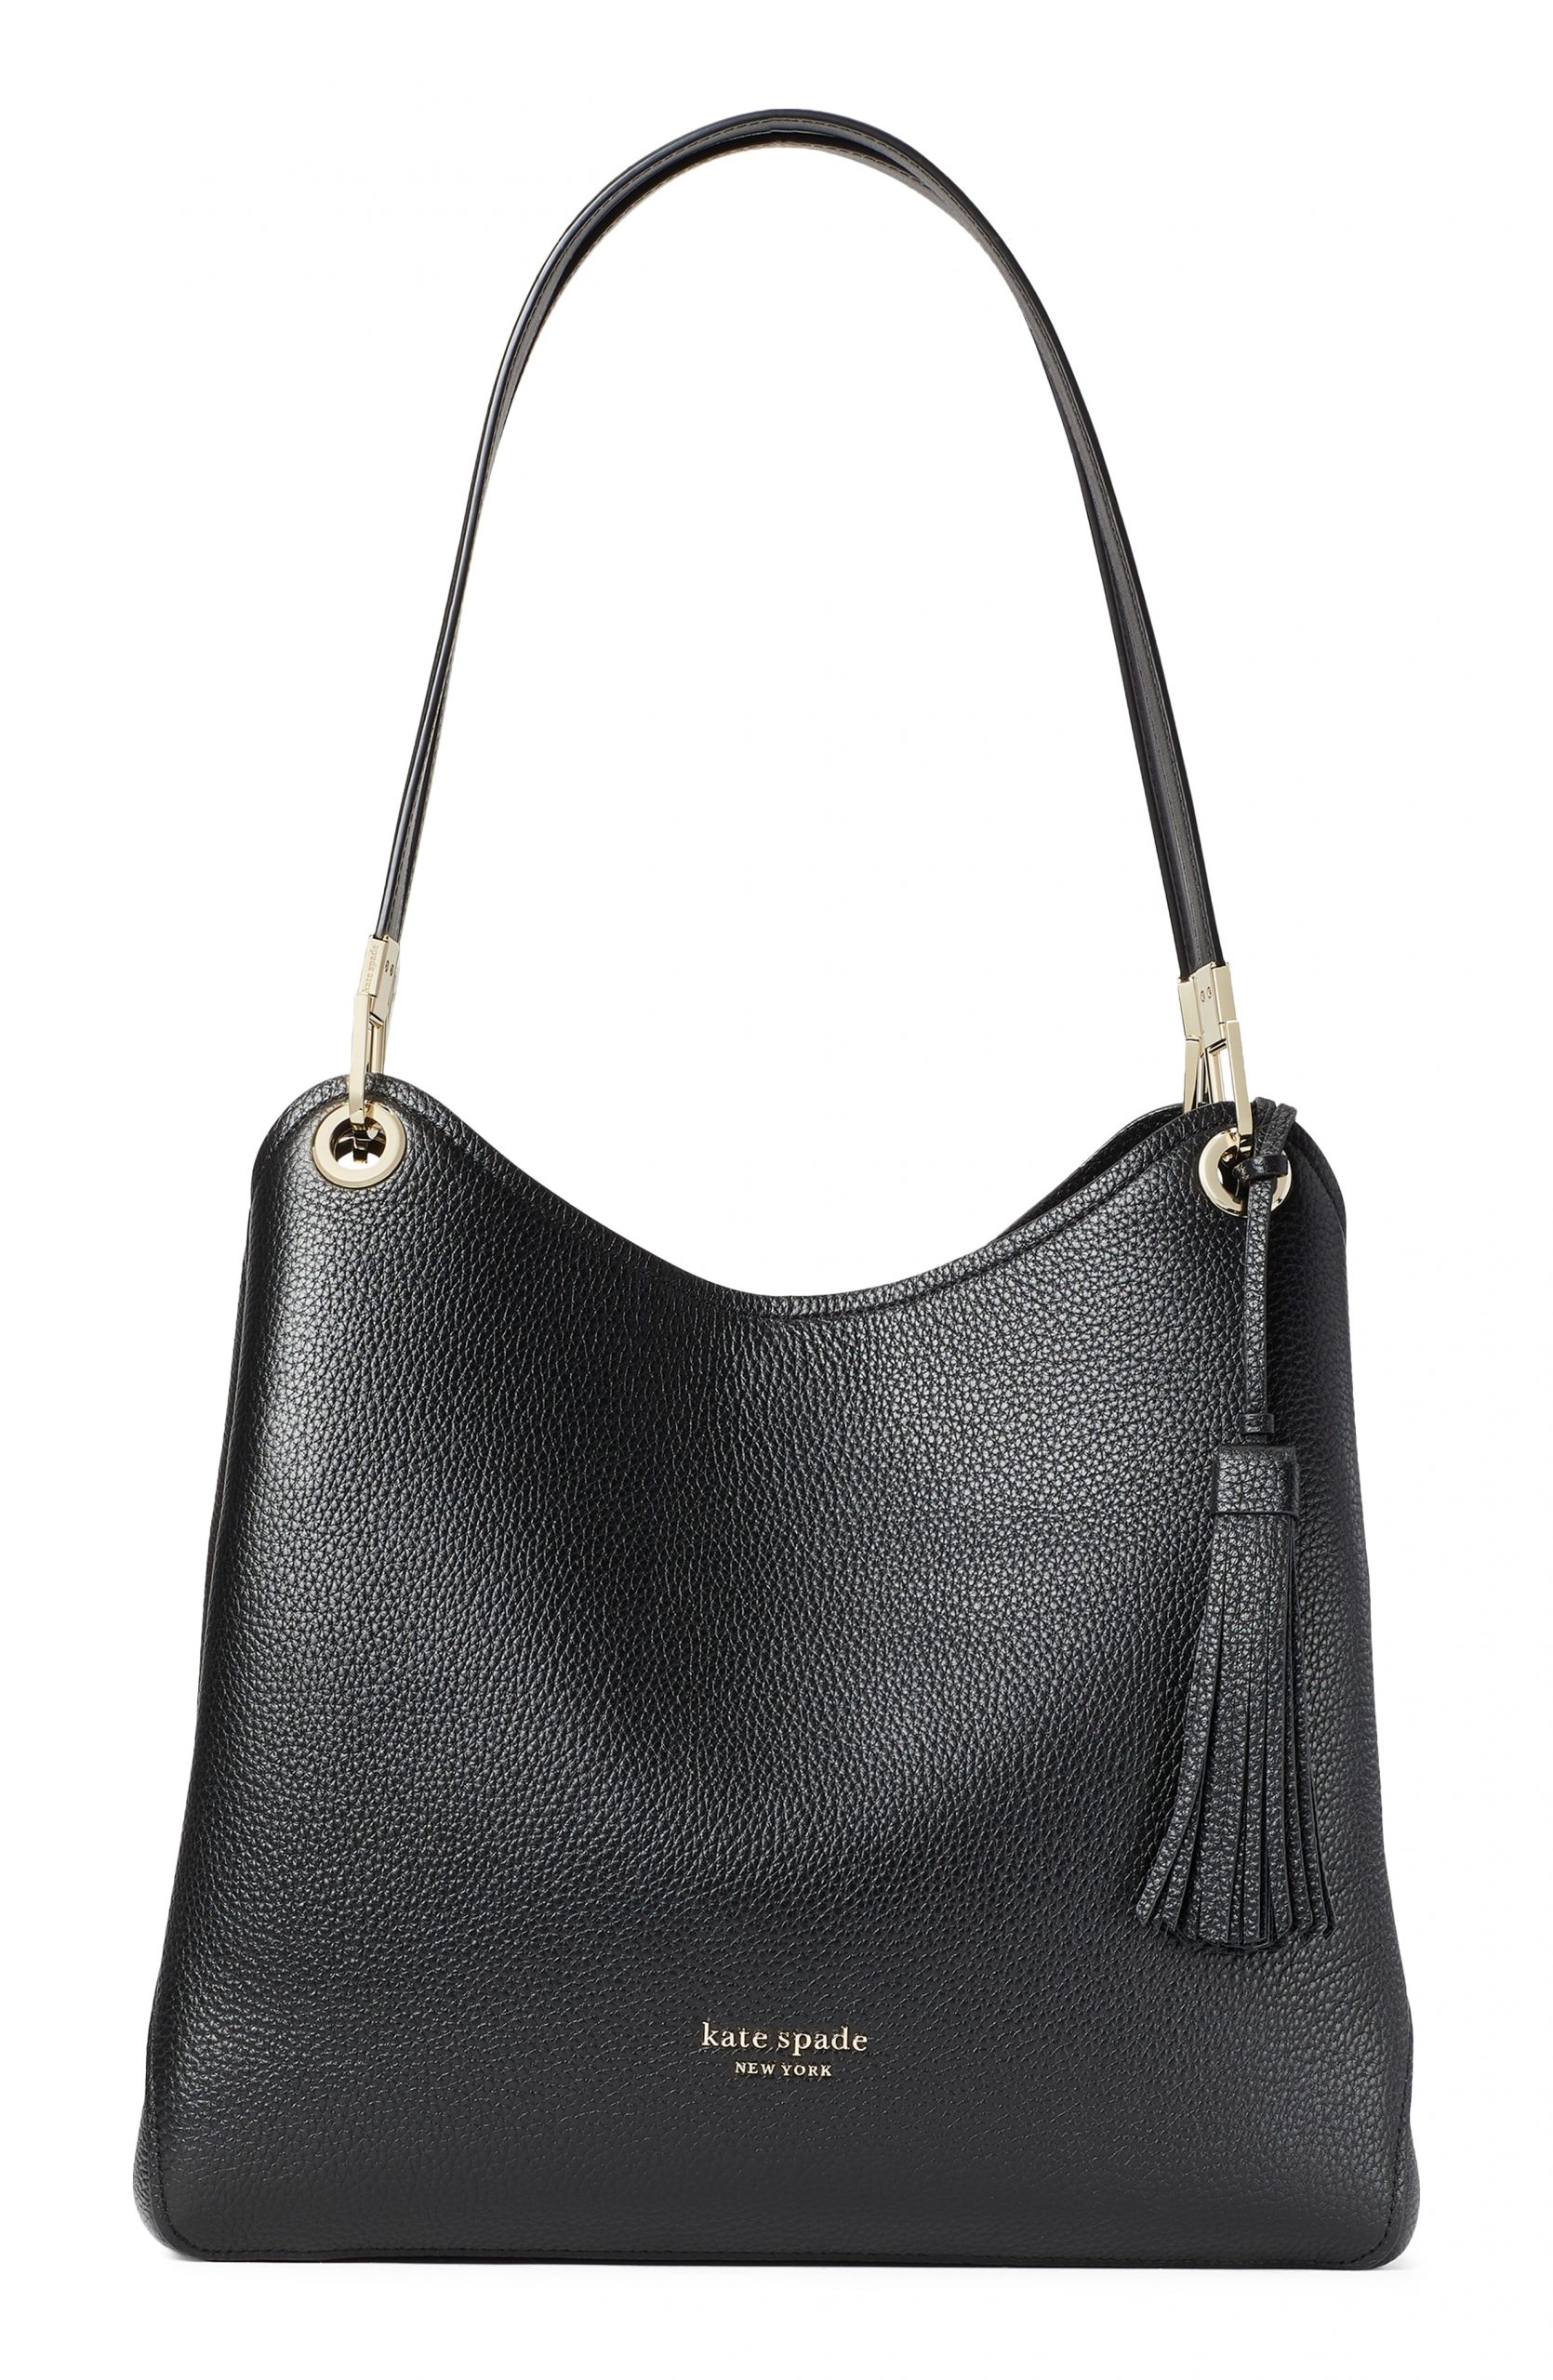 Kate Spade New York Large Loop Leather Shoulder Bag - Black | Fashion